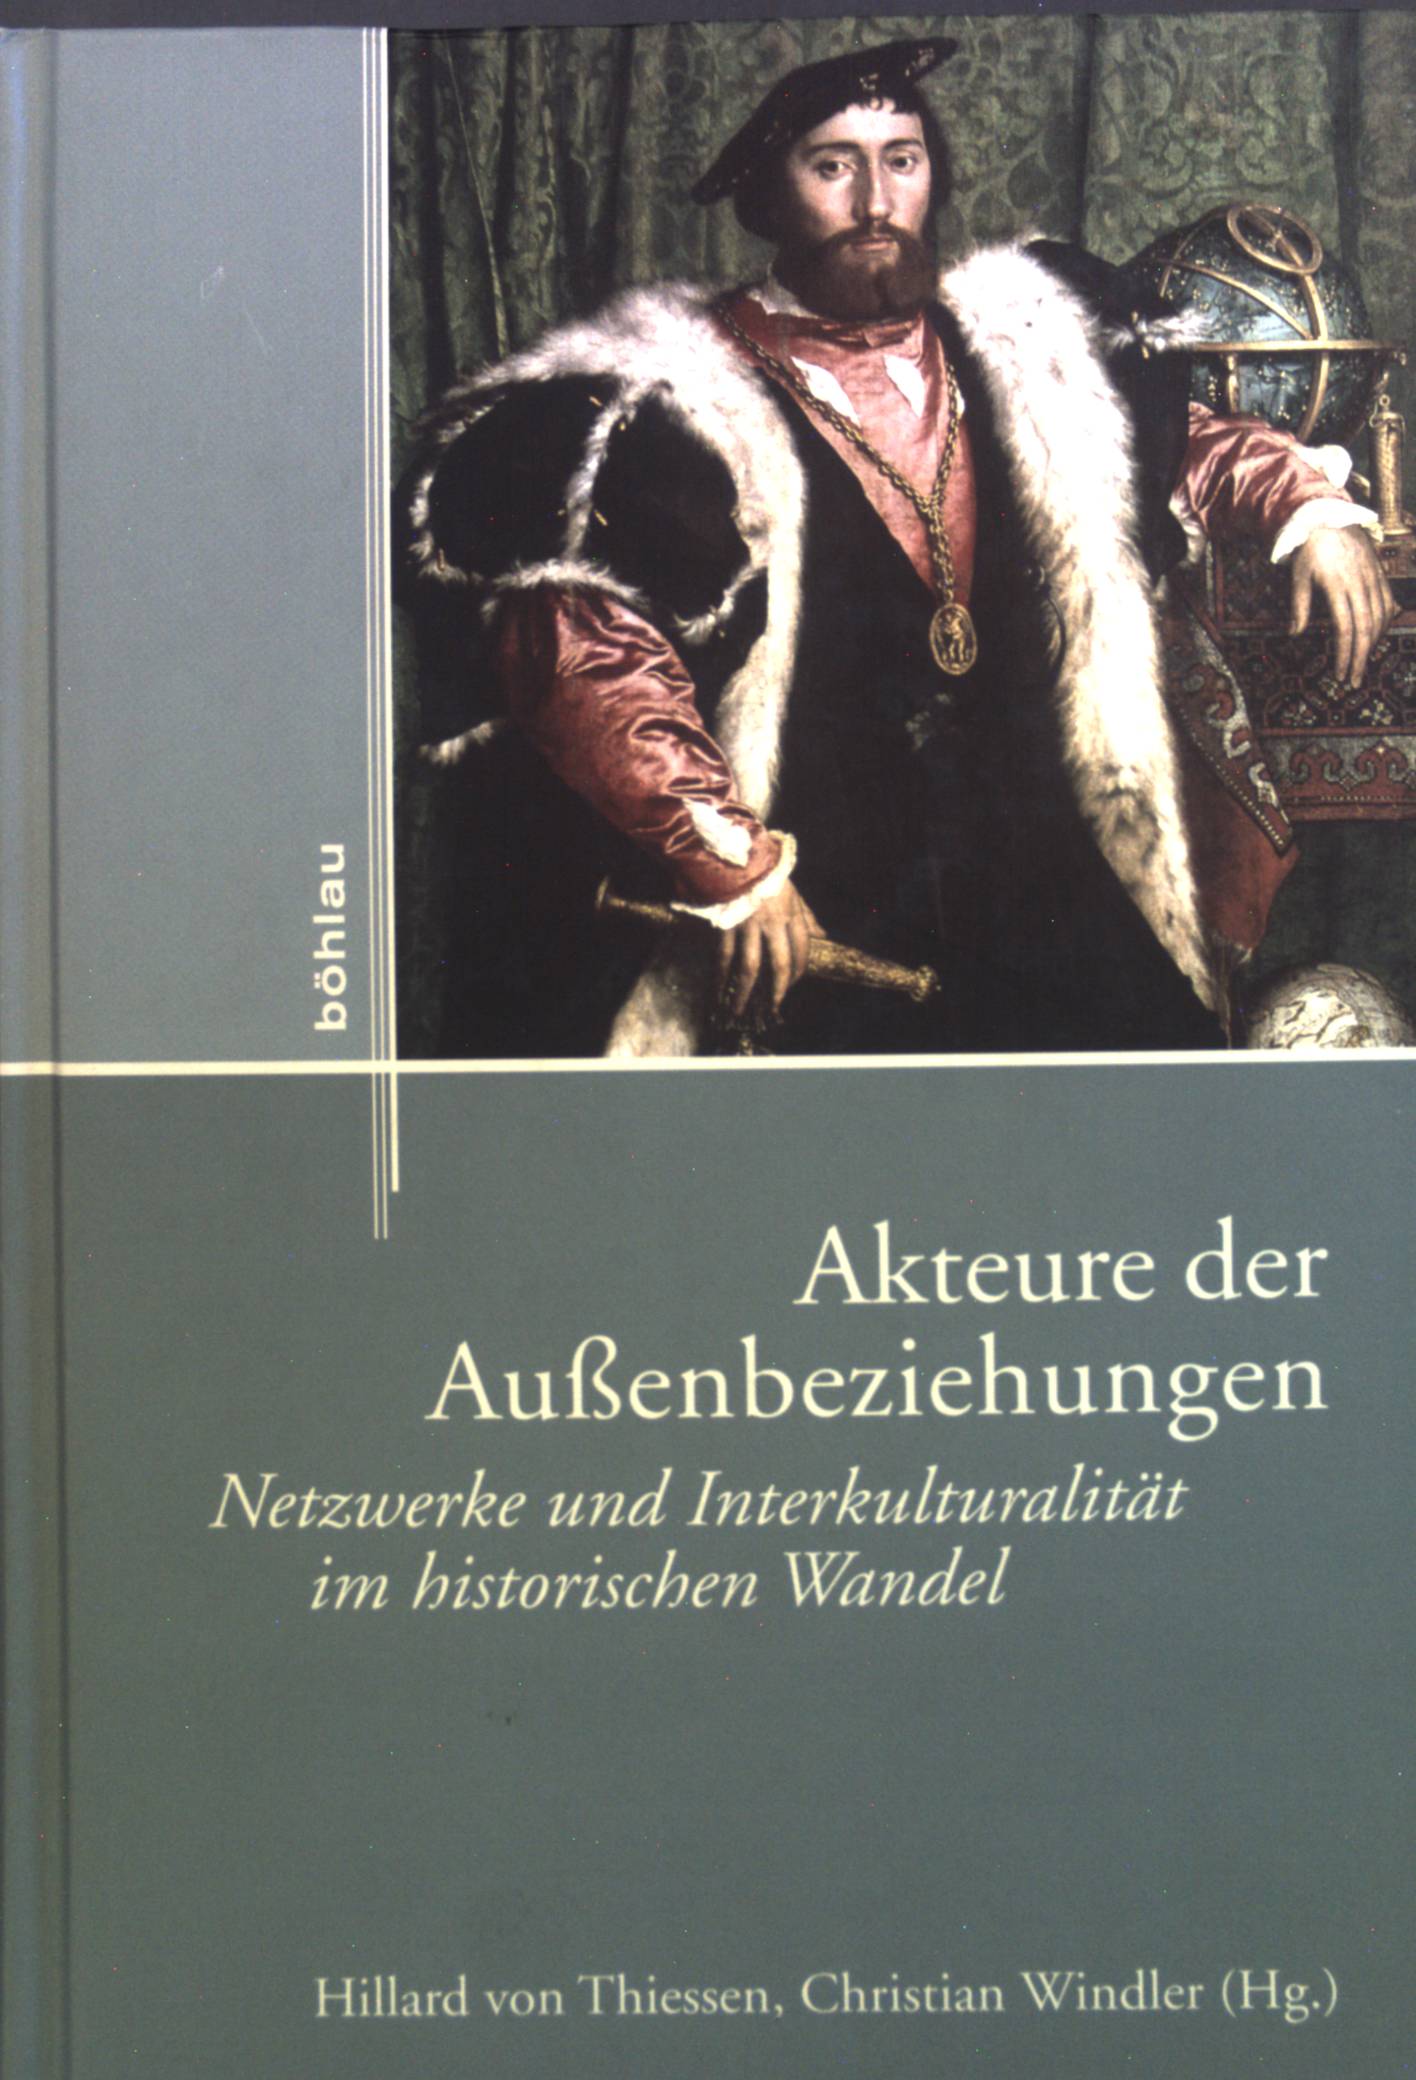 Akteure der Außenbeziehungen : Netzwerke und Interkulturalität im historischen Wandel. - Thiessen, Hillard von und Christian Windler